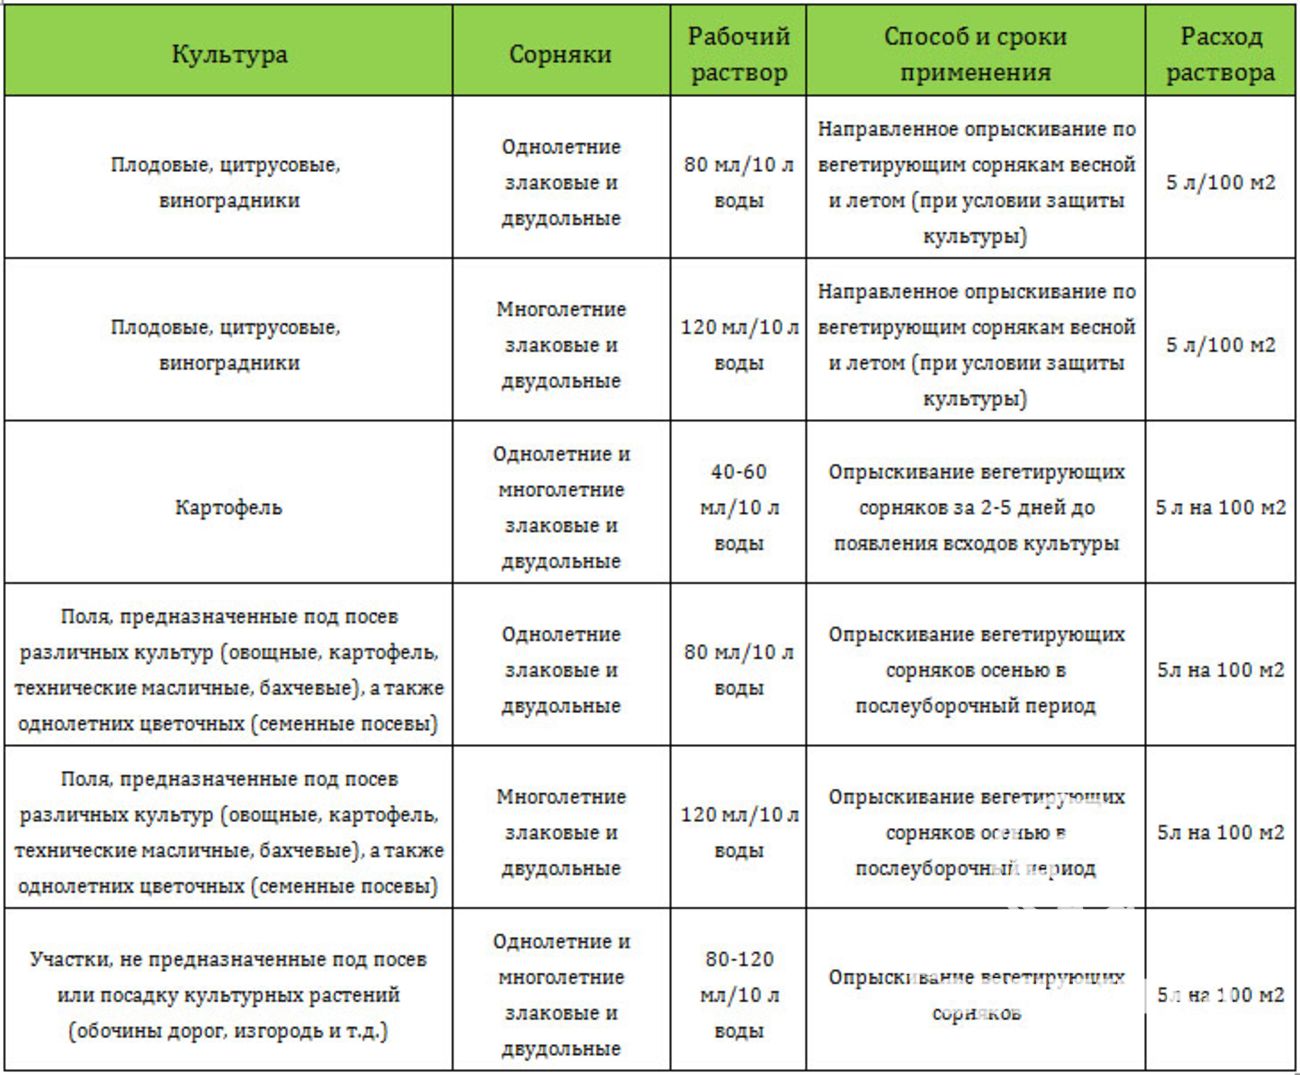 Инструкция по применению и состав гербицида галиган, дозировка и аналоги